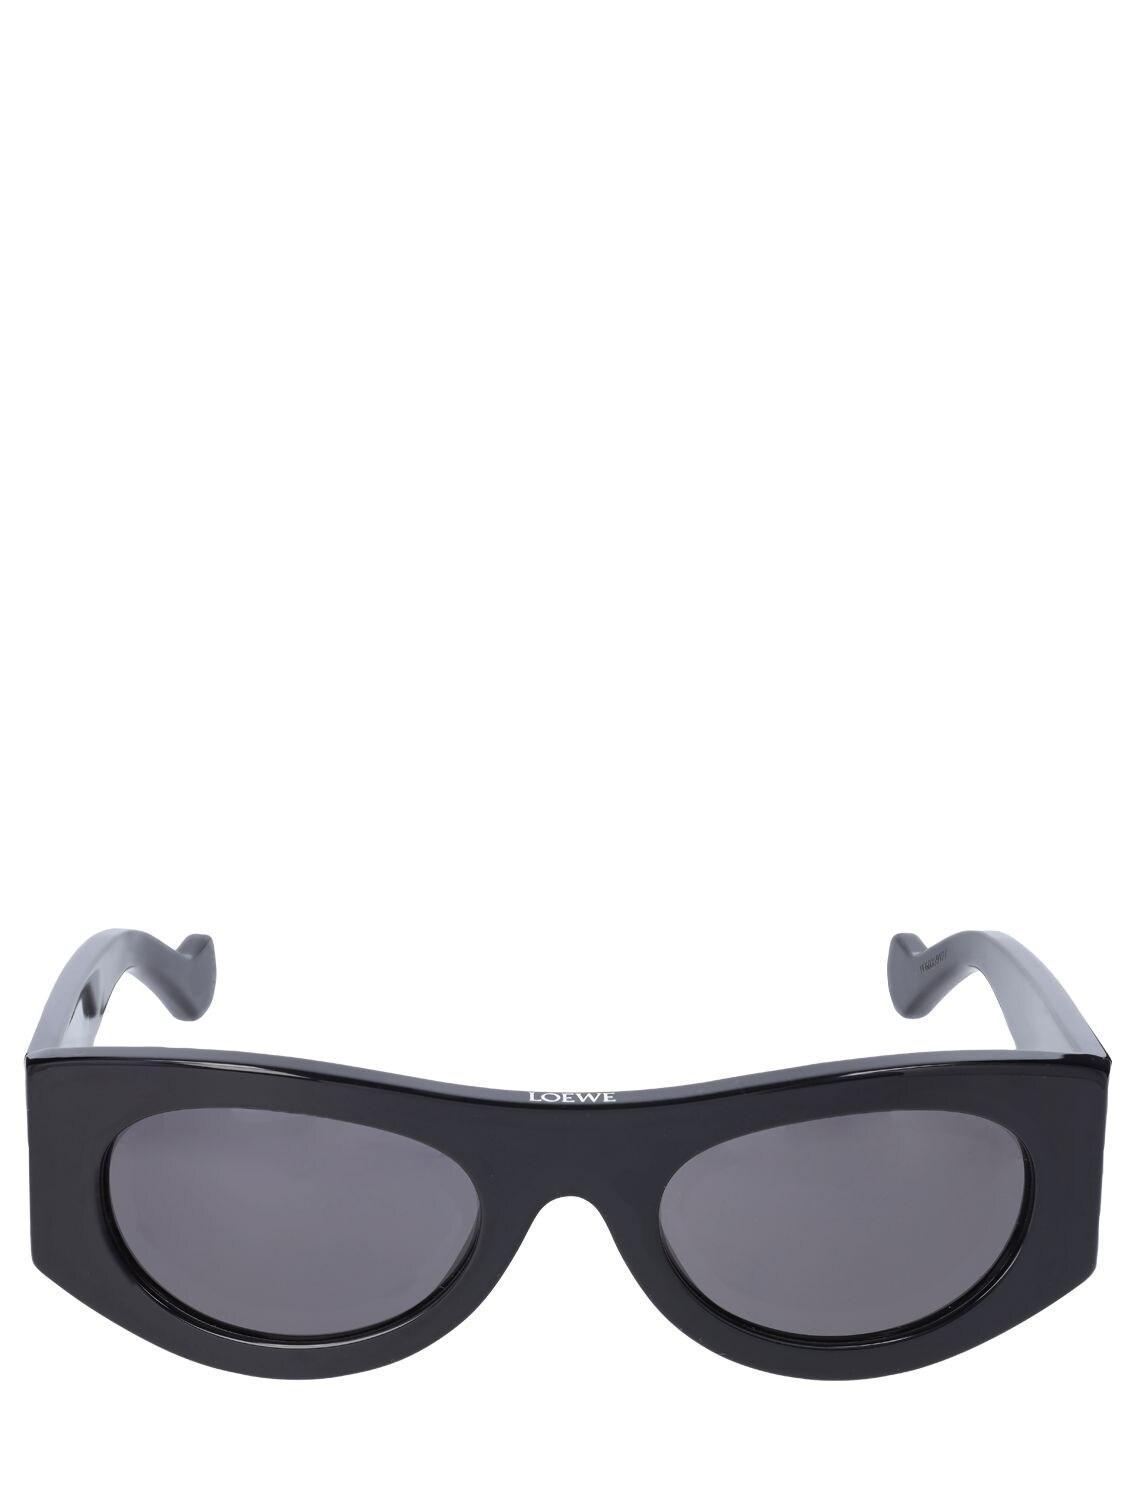 Loewe Sonnenbrille Aus Acetat Mit Anagrammmuster Damen Accessoires Sonnenbrillen 